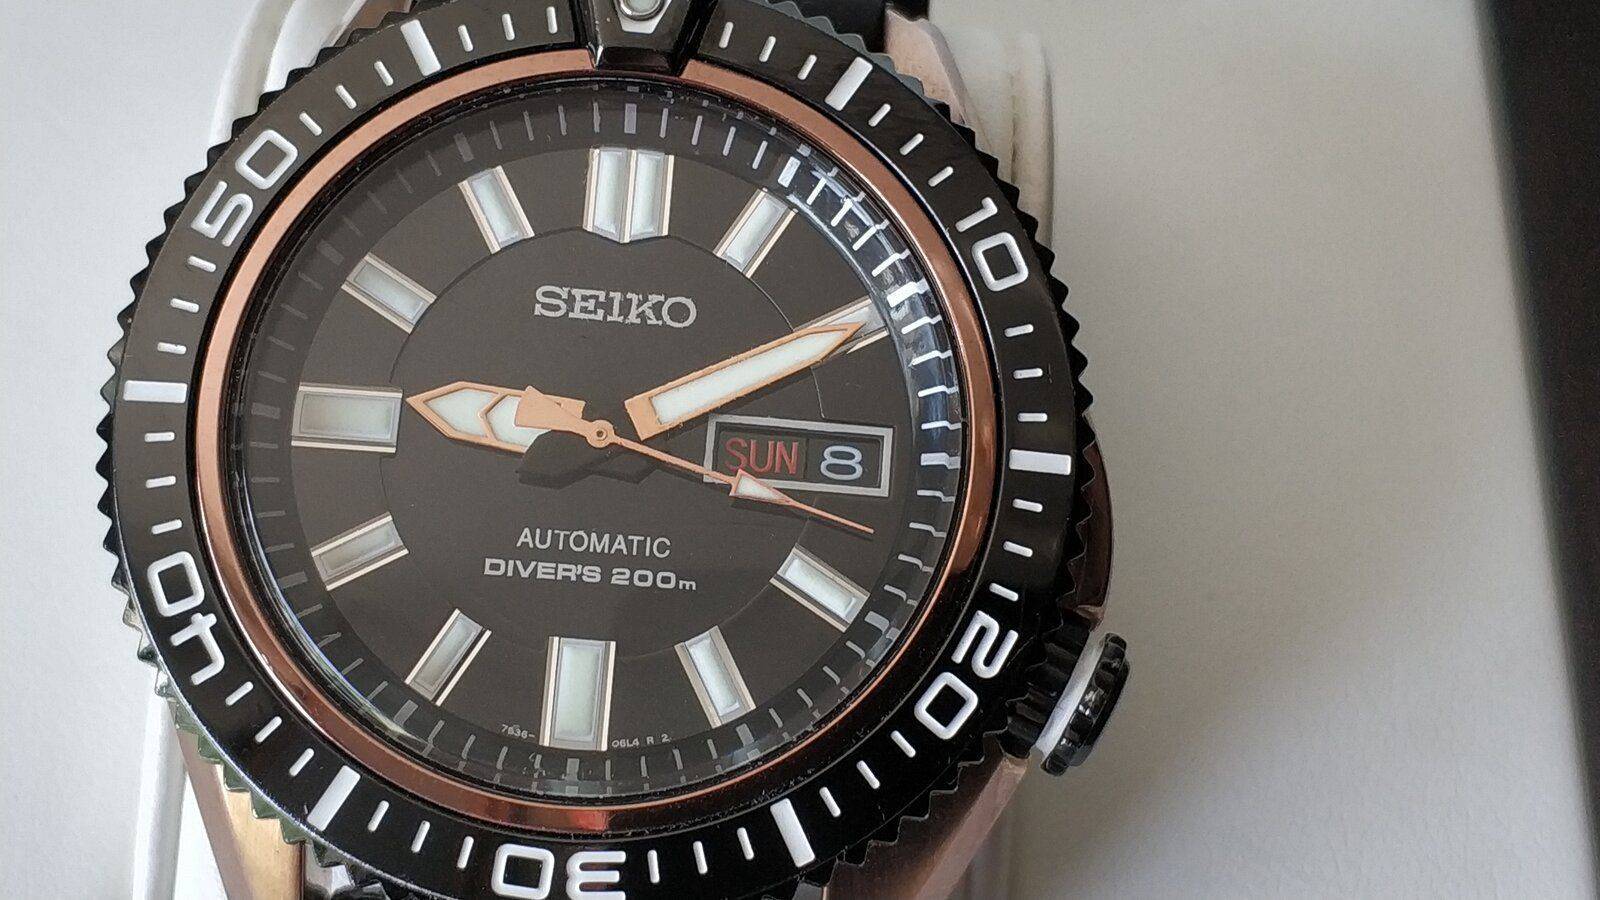 Seiko Stargate II - Automatic Diver | Relojes Especiales, EL foro de relojes